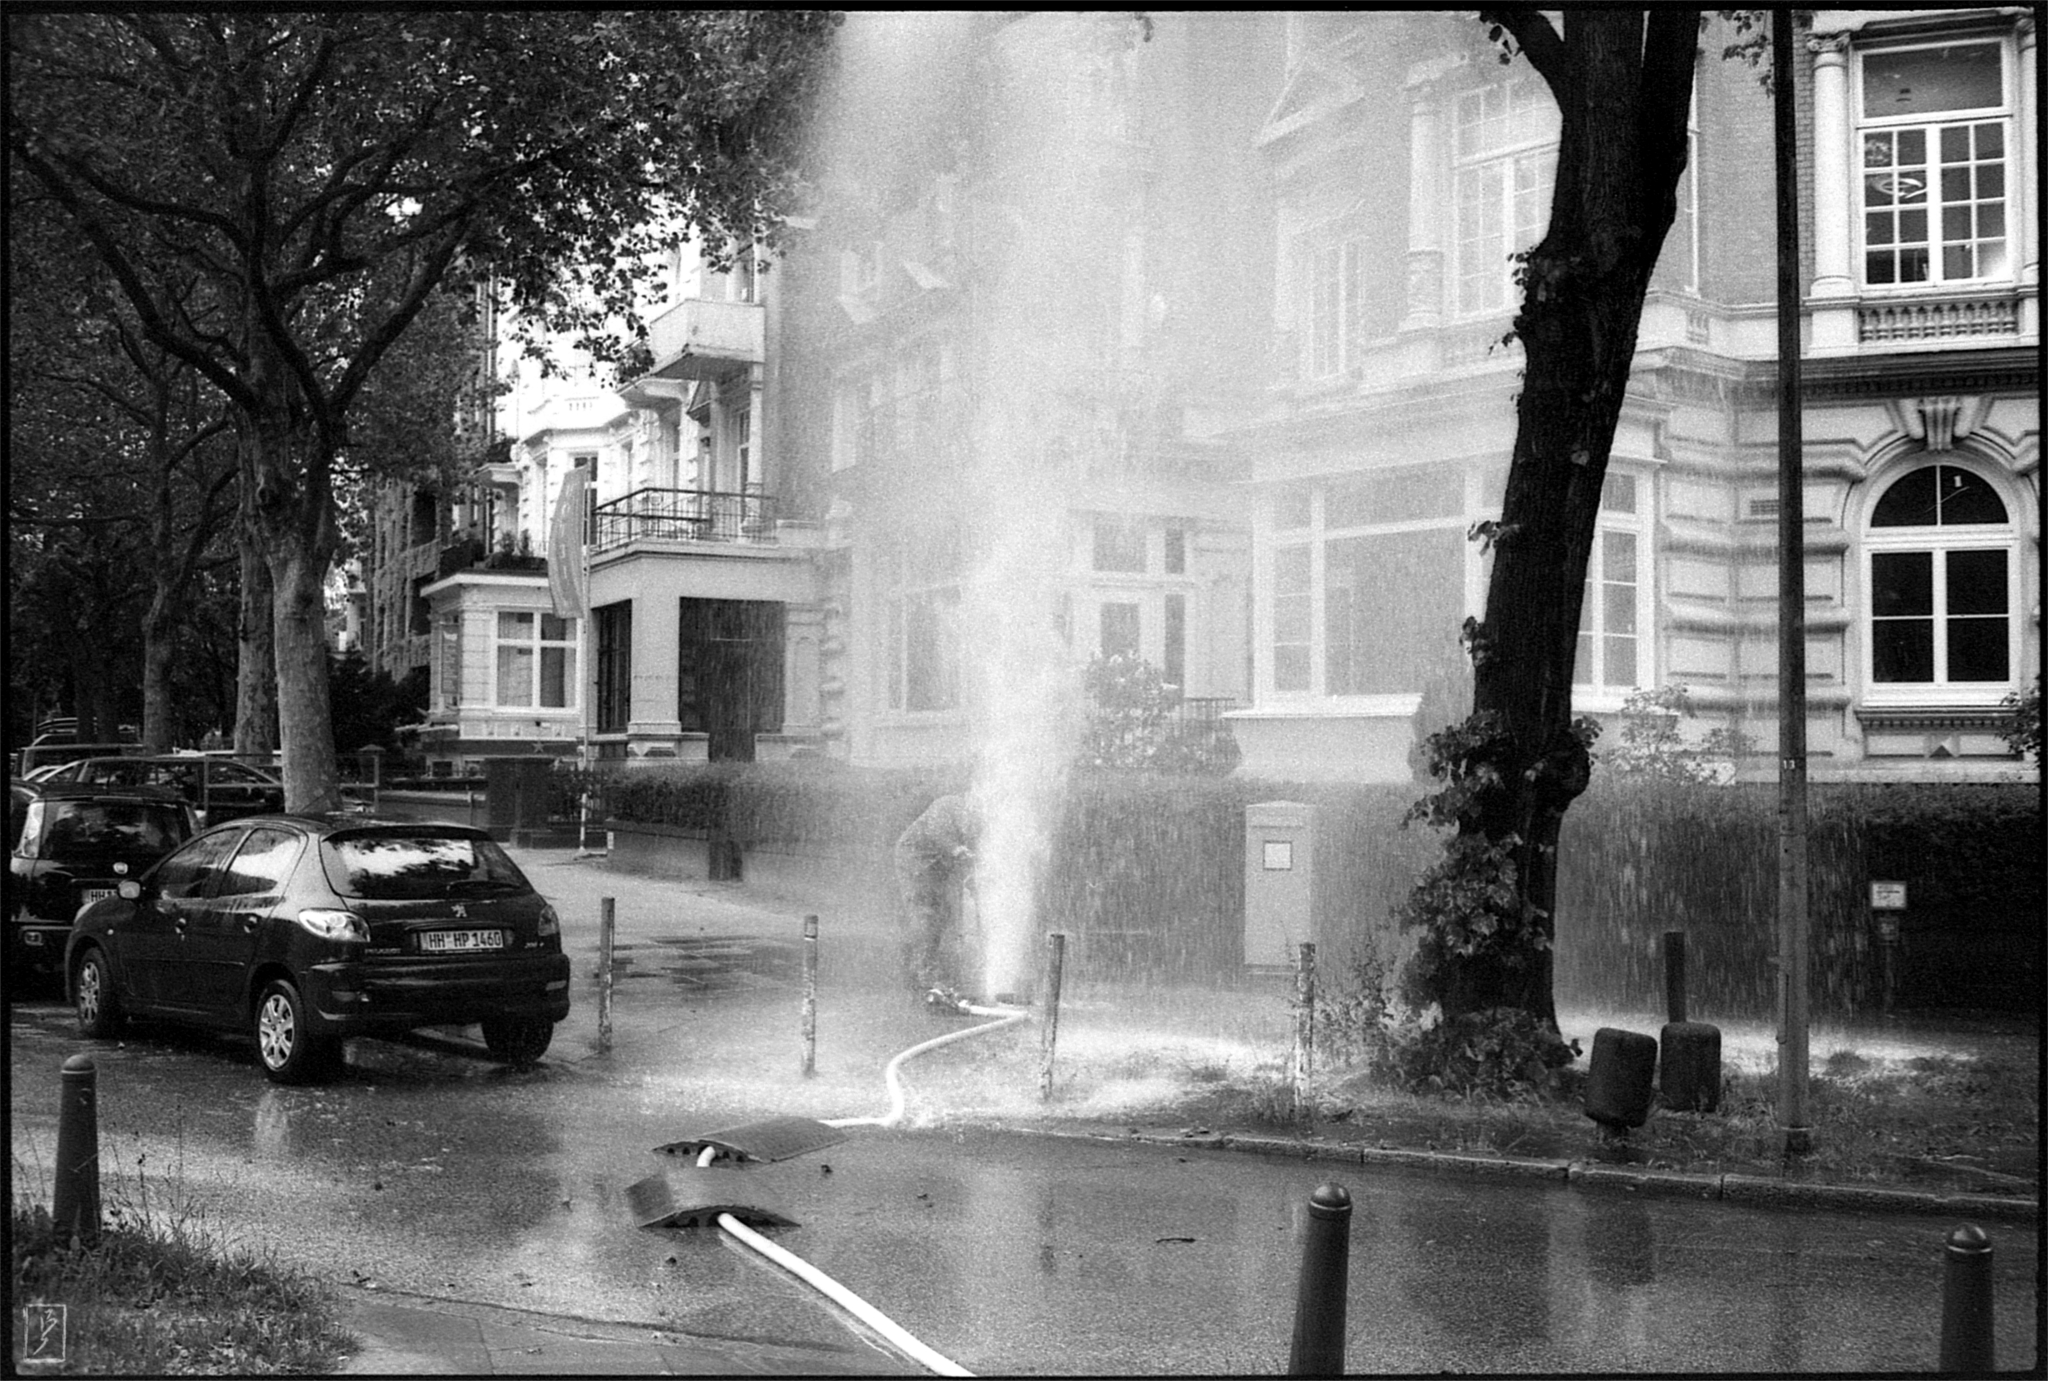 Worker trying to stop a leaking Hydrant on Schlüterstraße/Moorweidenstraße.